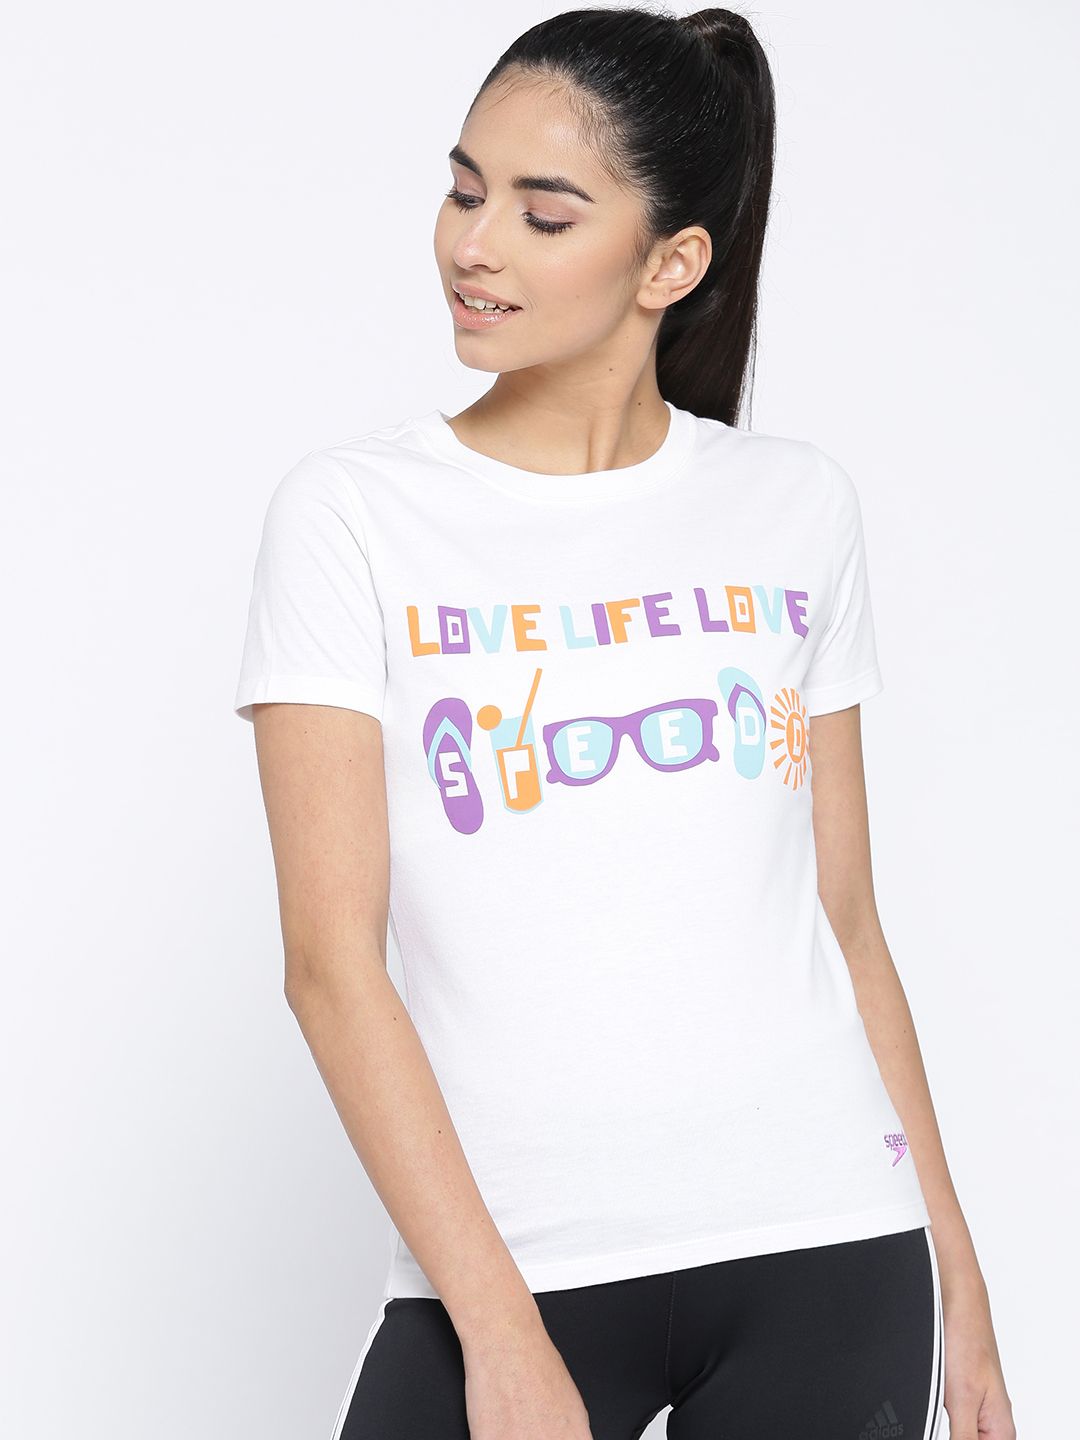 Speedo Women White Printed Round Neck T-shirt Price in India